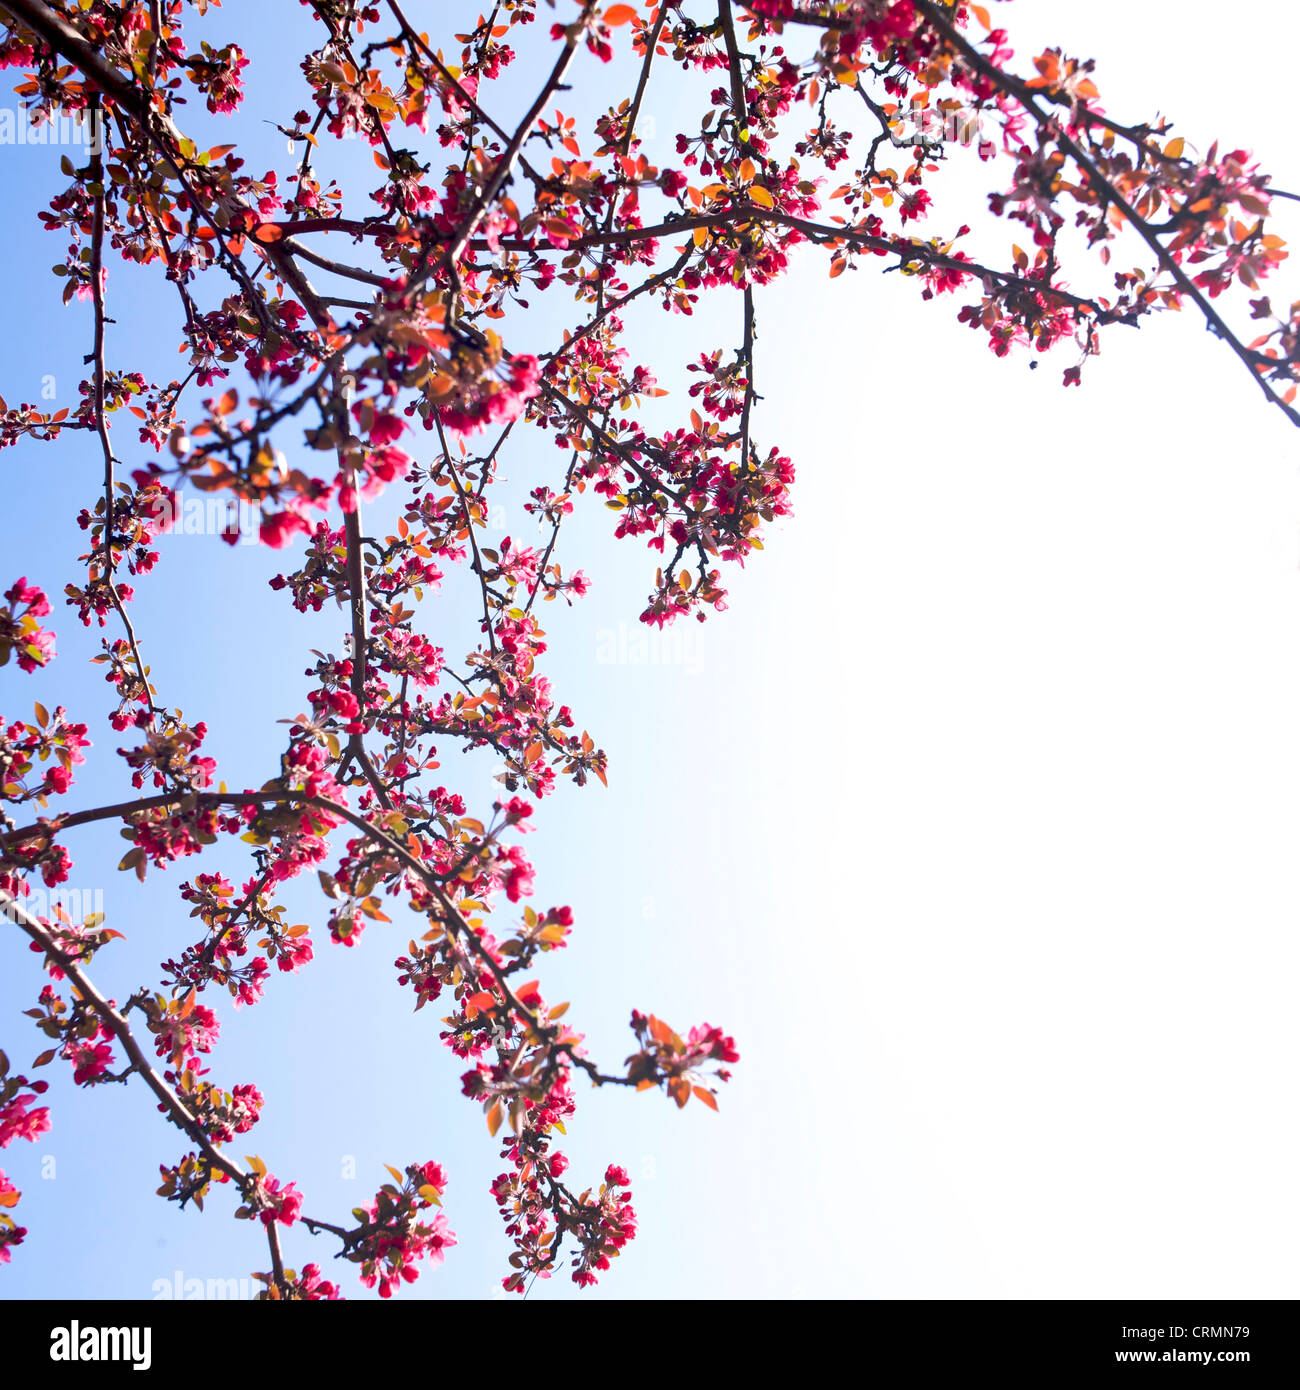 Guardando il bellissimo rami piena di rosa fiori di ciliegio appeso a un albero nella stagione primaverile. Foto Stock